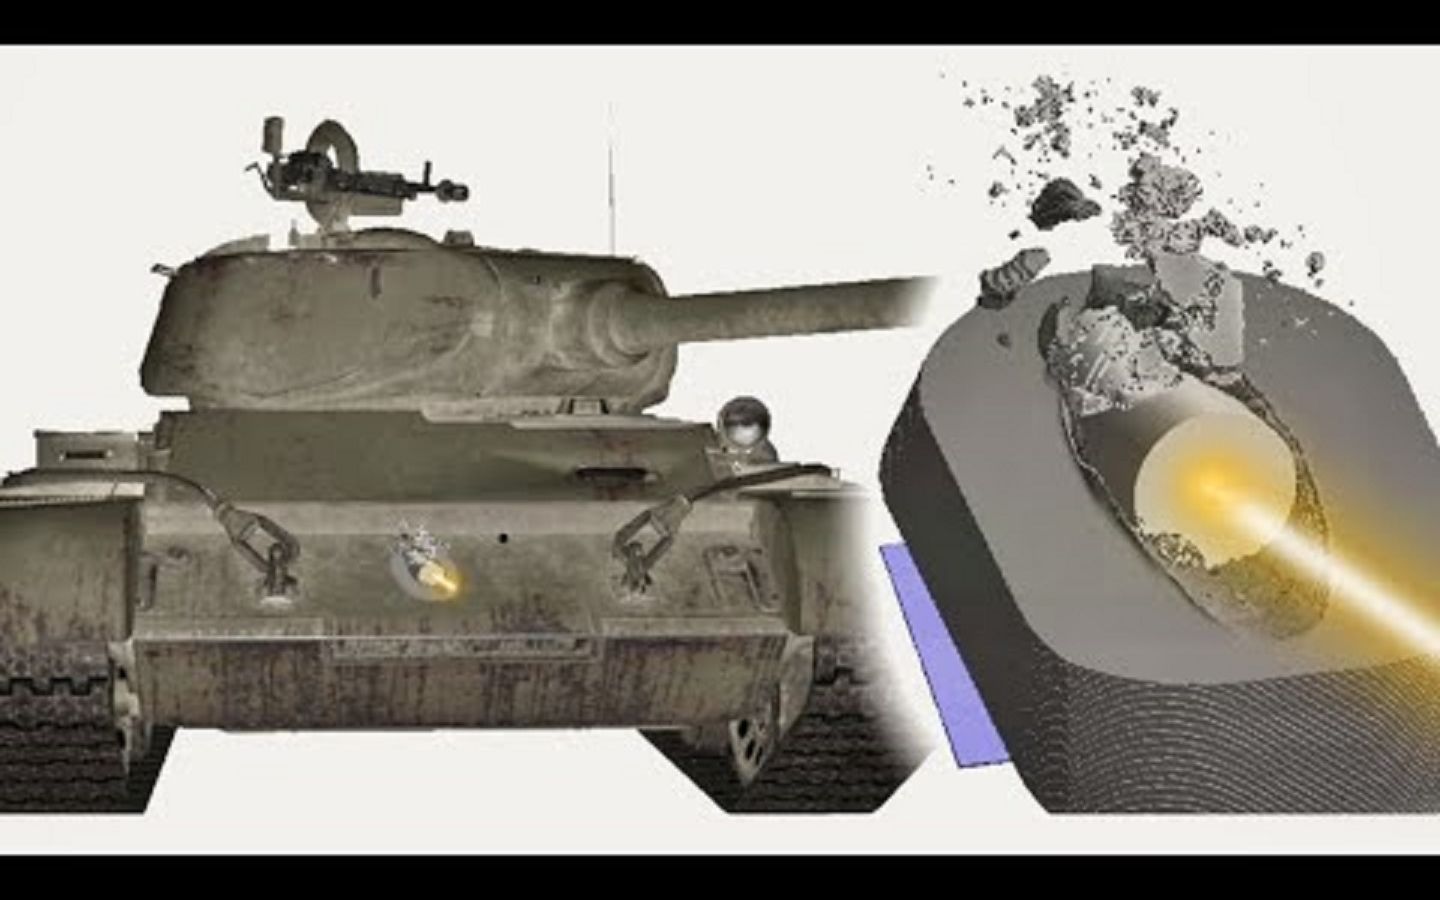 超级潘兴对T-44首上装甲的侵彻力分析